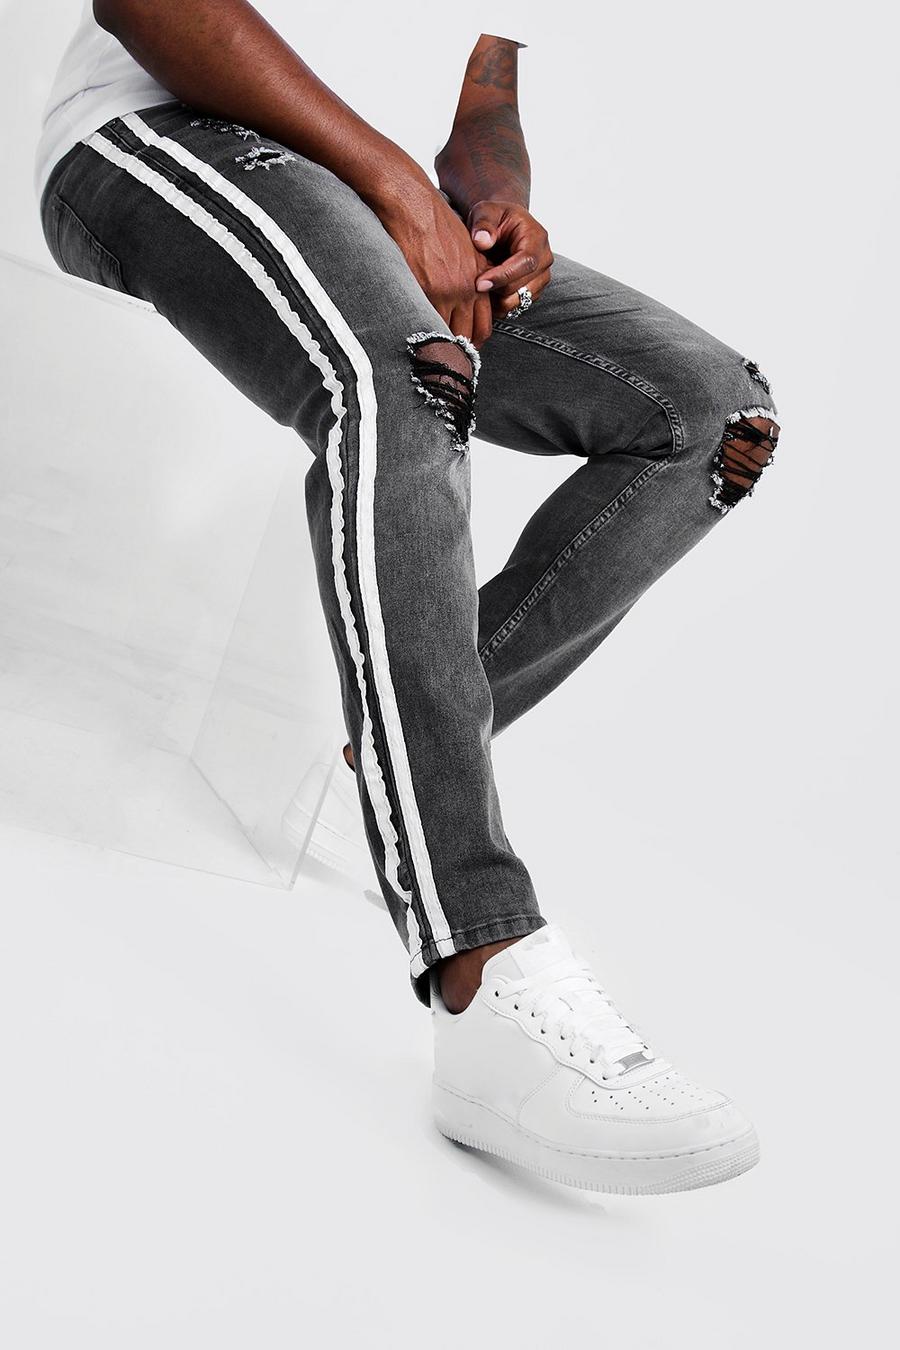 אפור gris סקיני ג'ינס עם קרעים לגברים גדולים וגבוהים